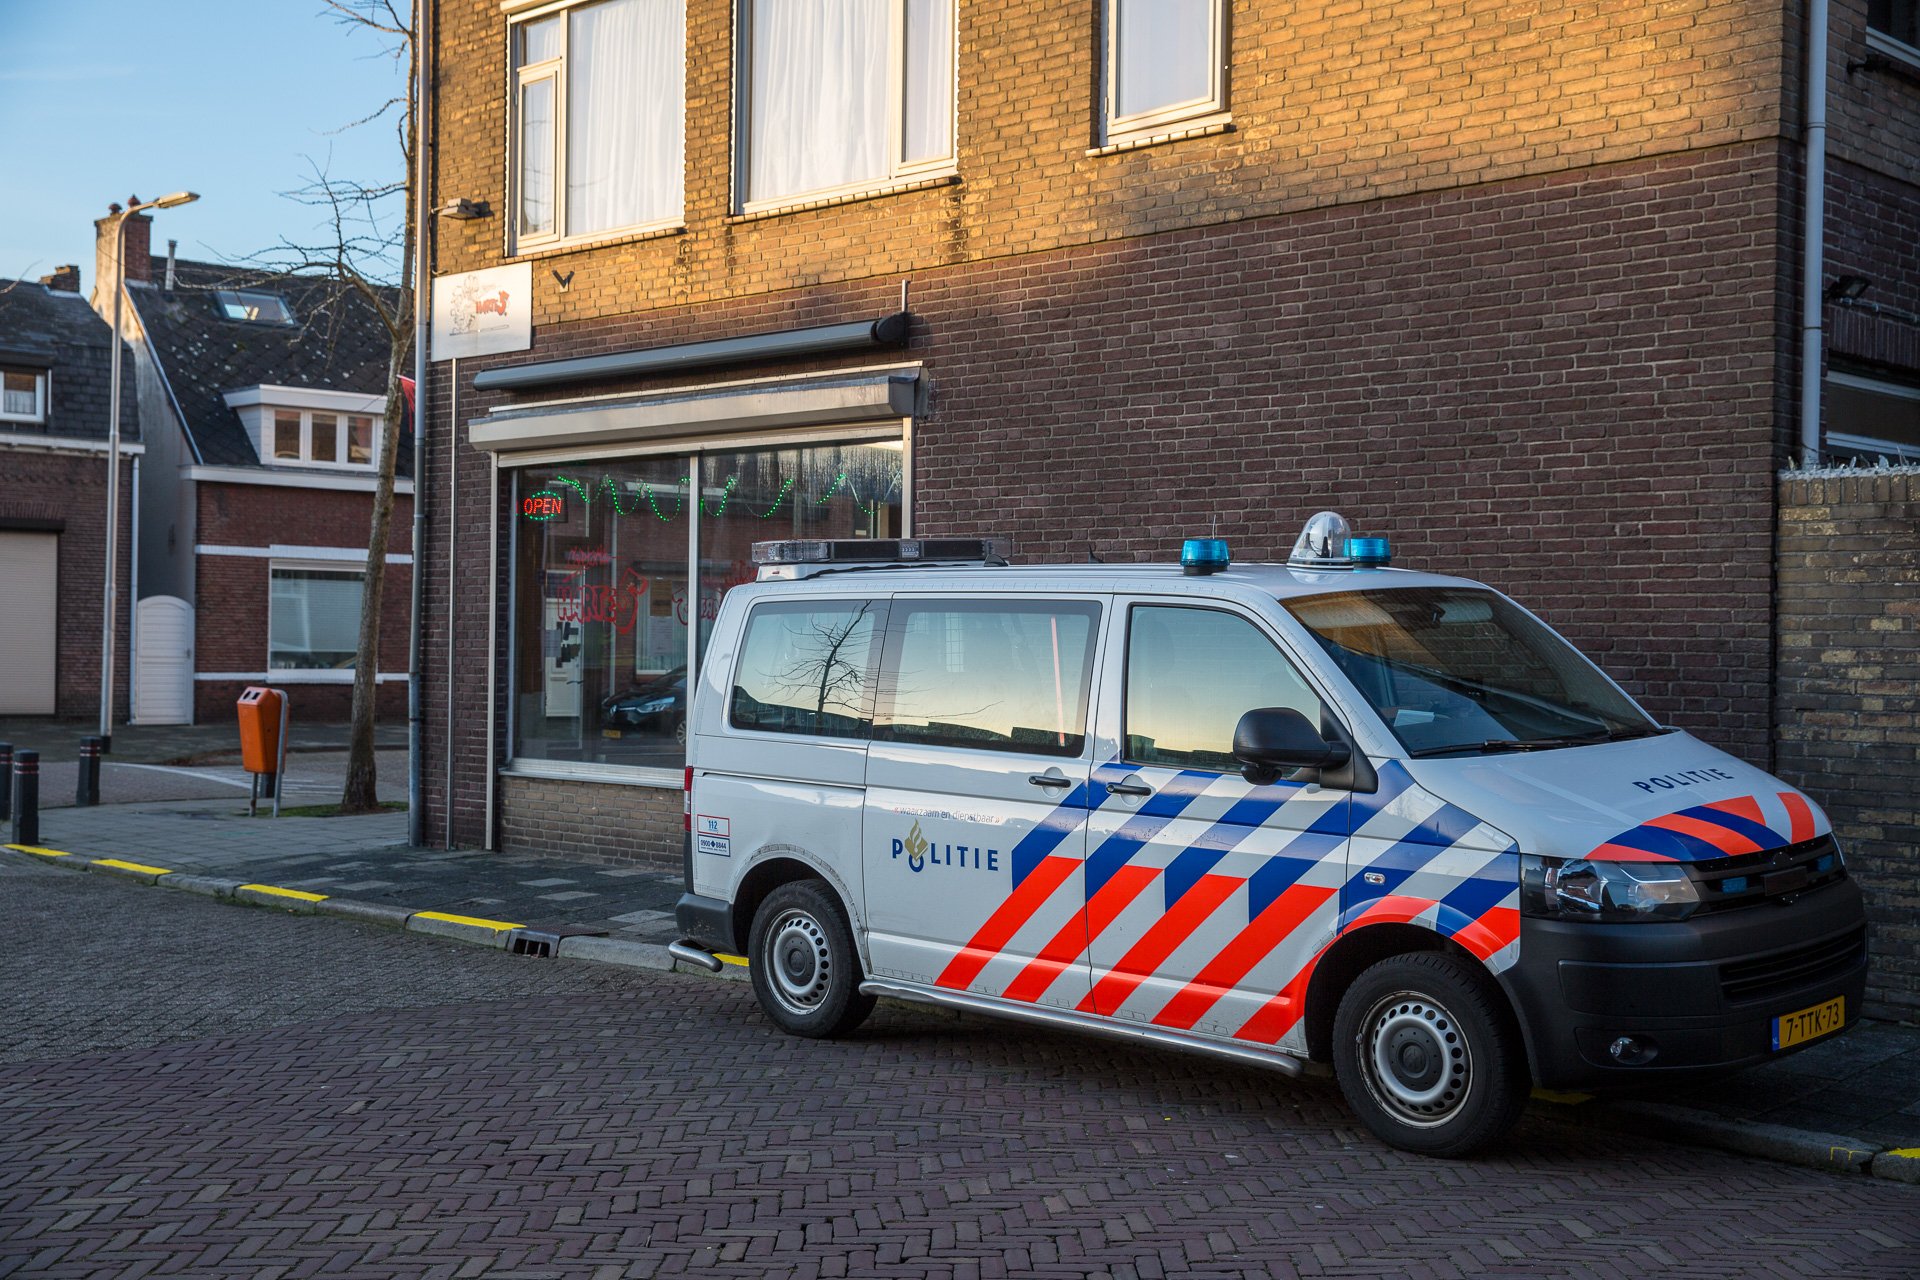 Overvaller (17) op heterdaad aangehouden in Roosendaal